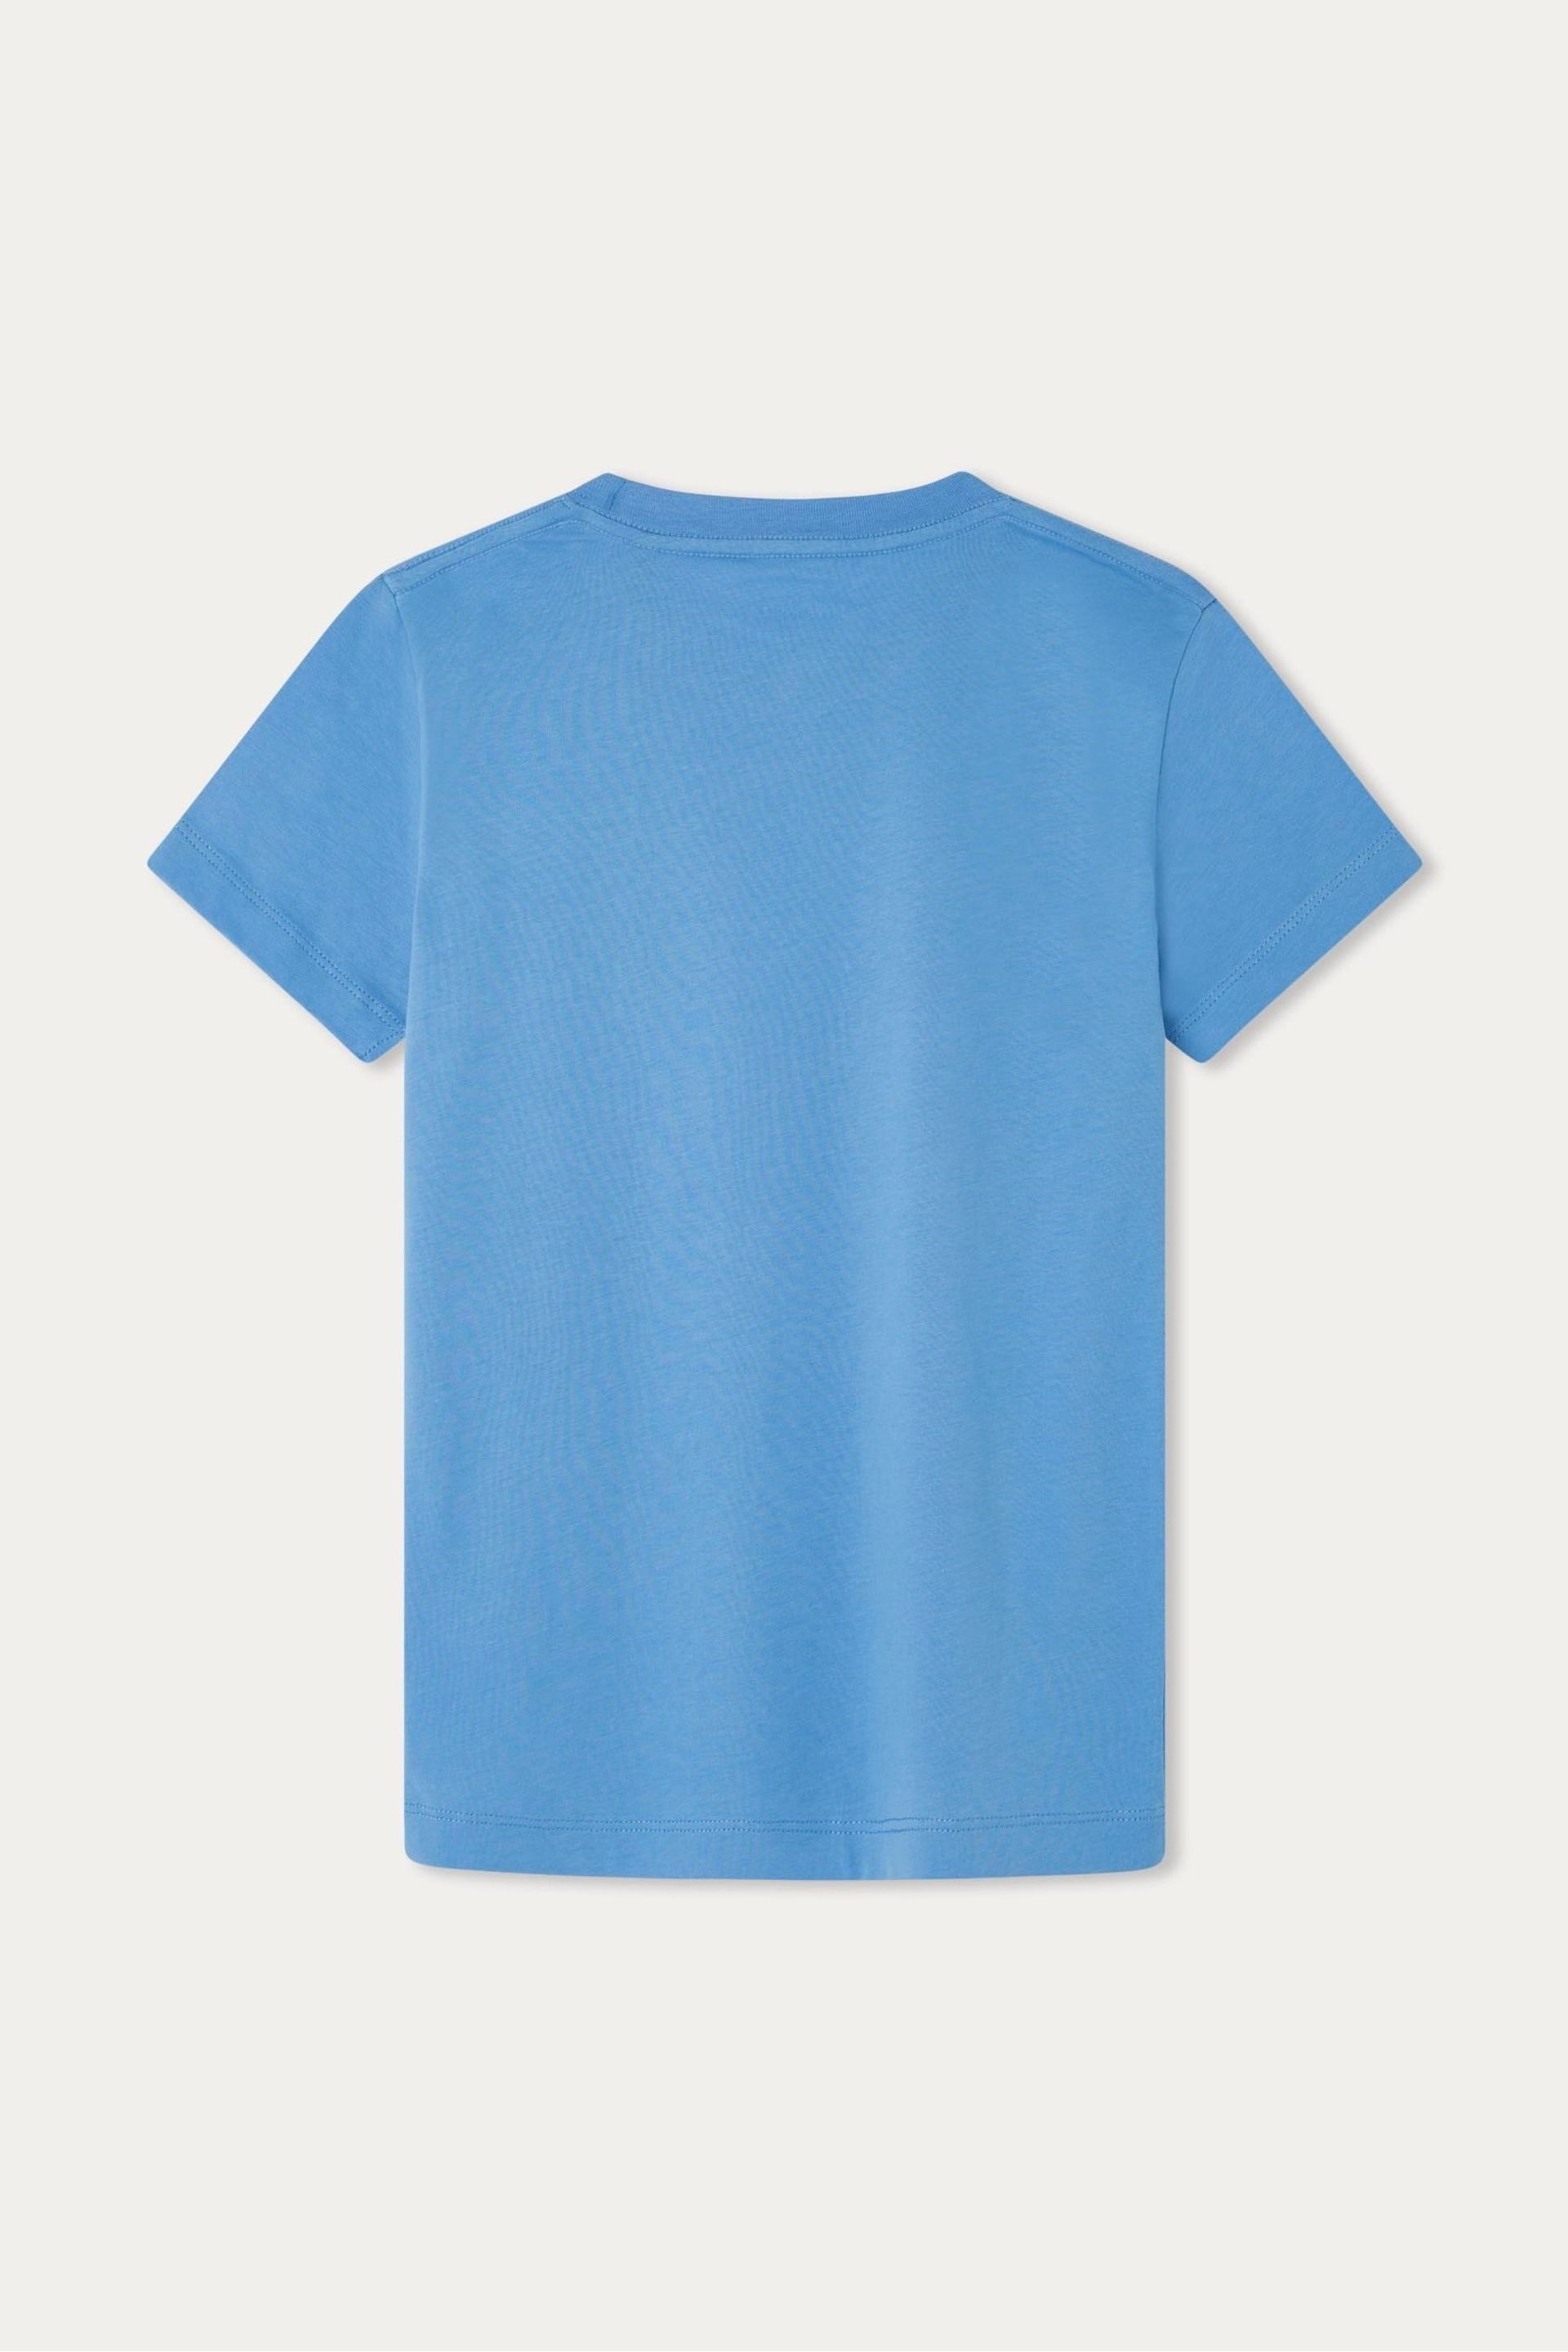 Hackett London Older Boys Blue Short Sleeve T-Shirt - Image 2 of 2